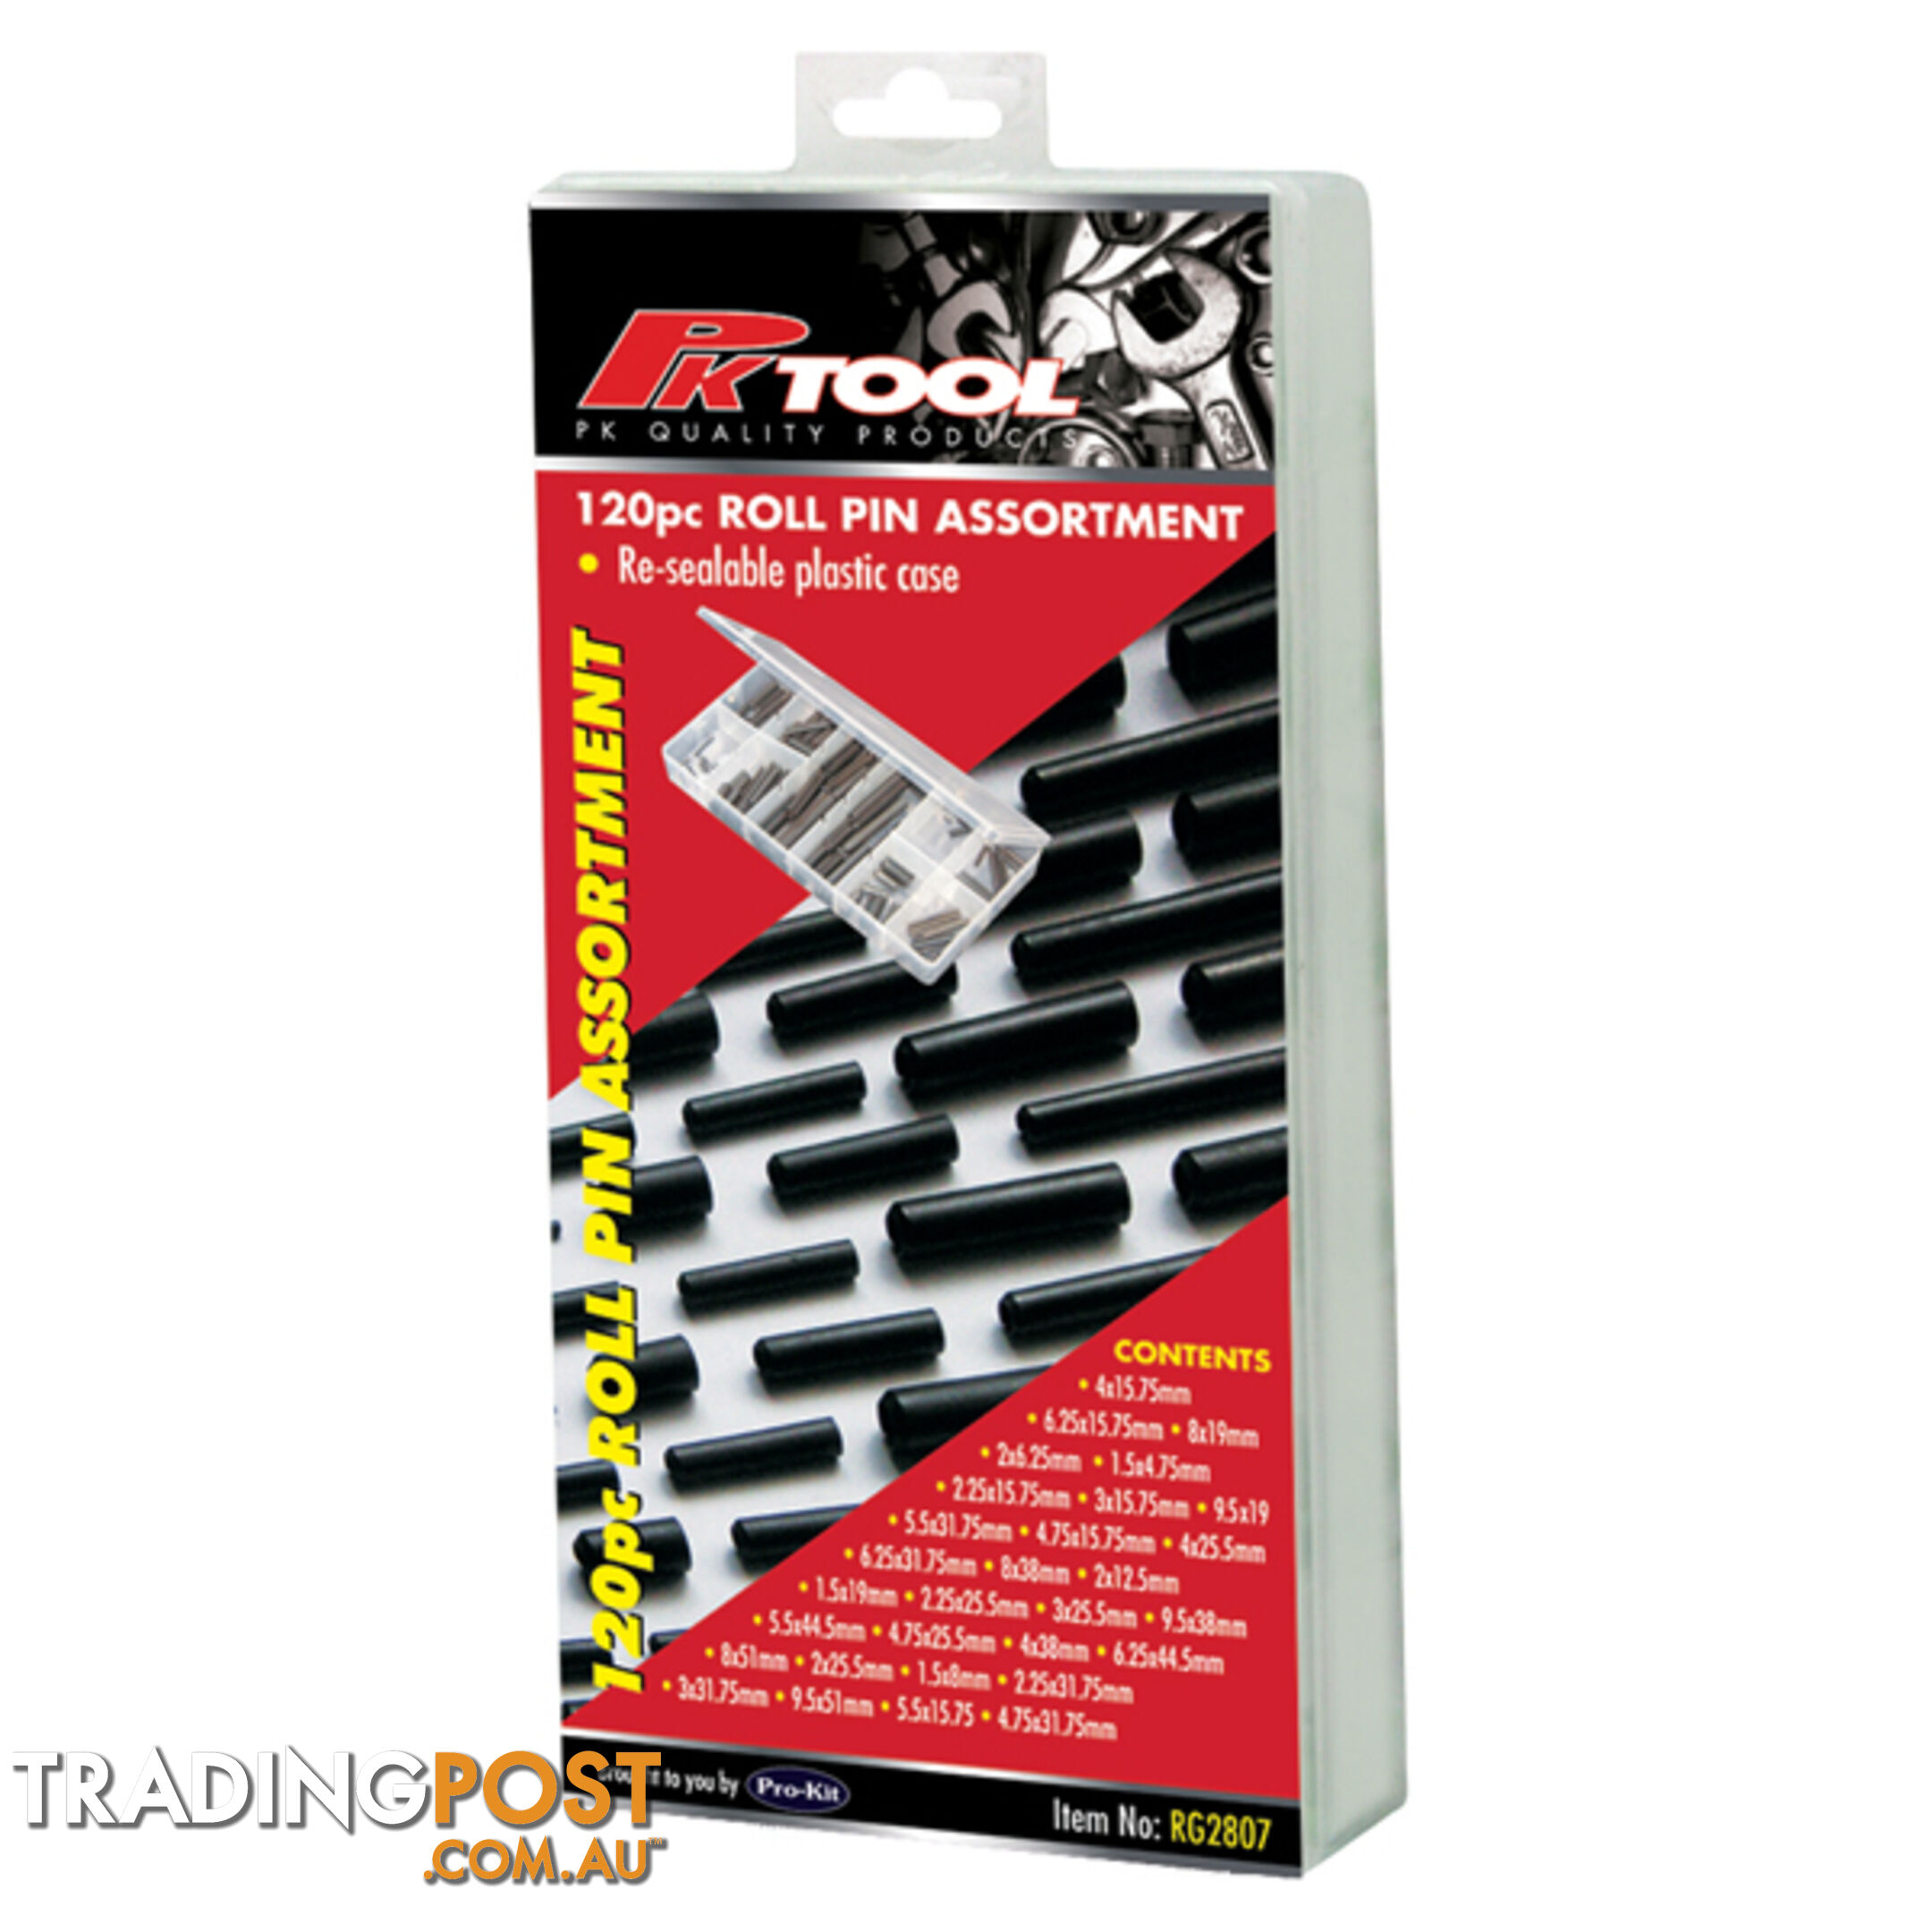 Roll Pin Assortment Kit 120pc SKU - RG2807